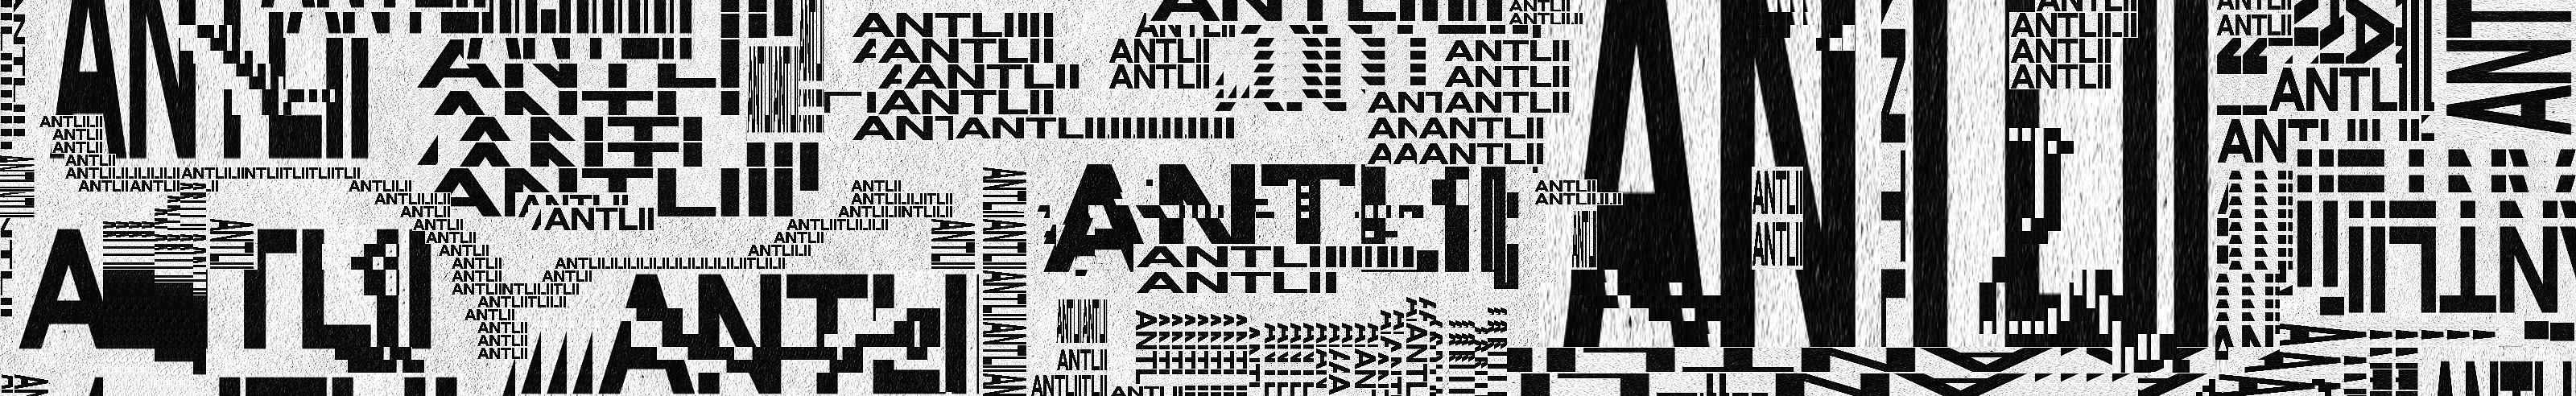 Antlii 🇺🇦s profilbanner